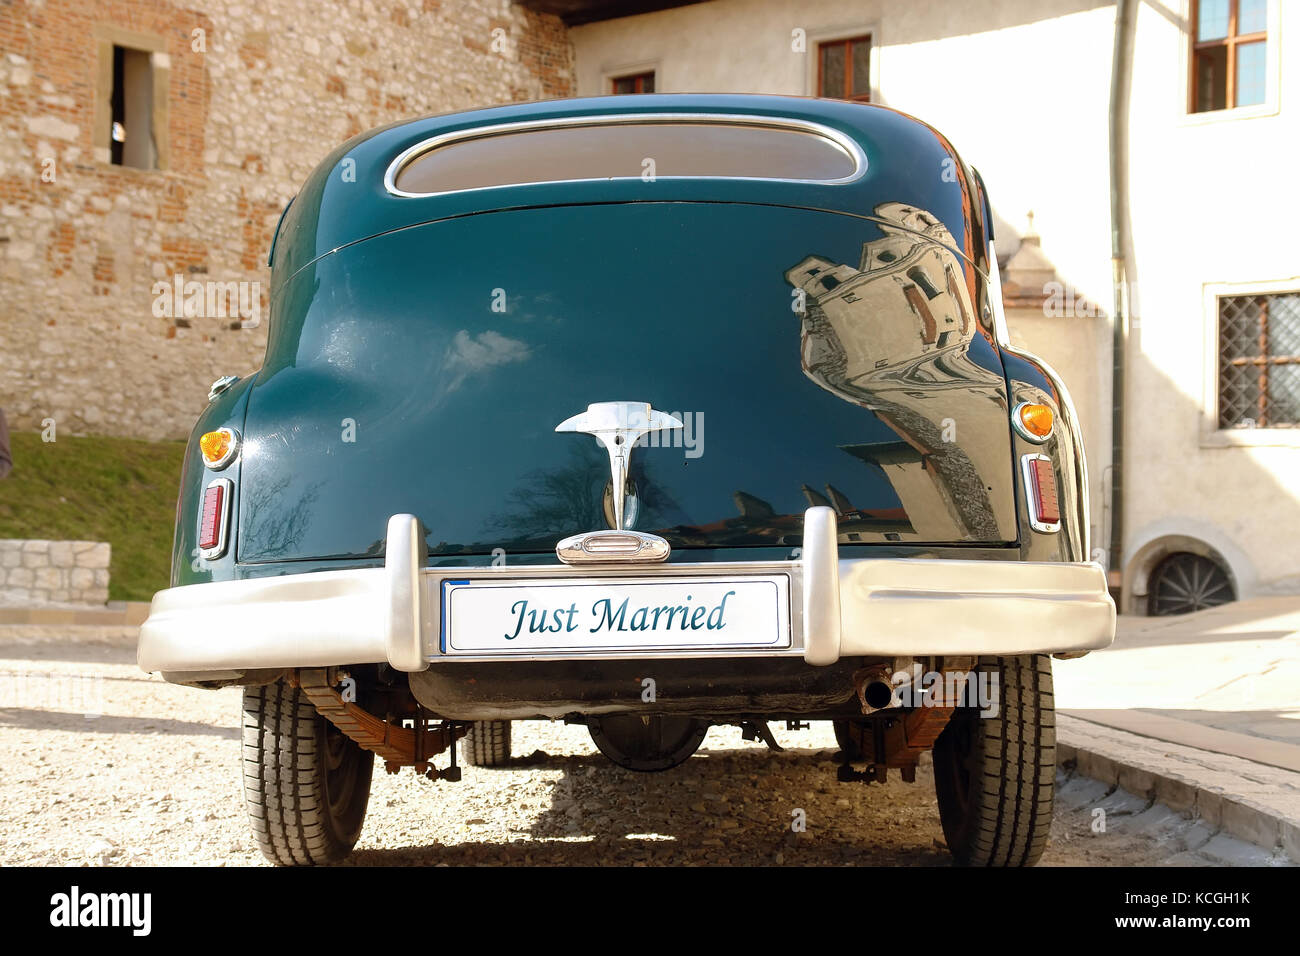 Rückseite des Dunkelgrün retro Hochzeit Auto mit Just married Nummernschild Stockfoto